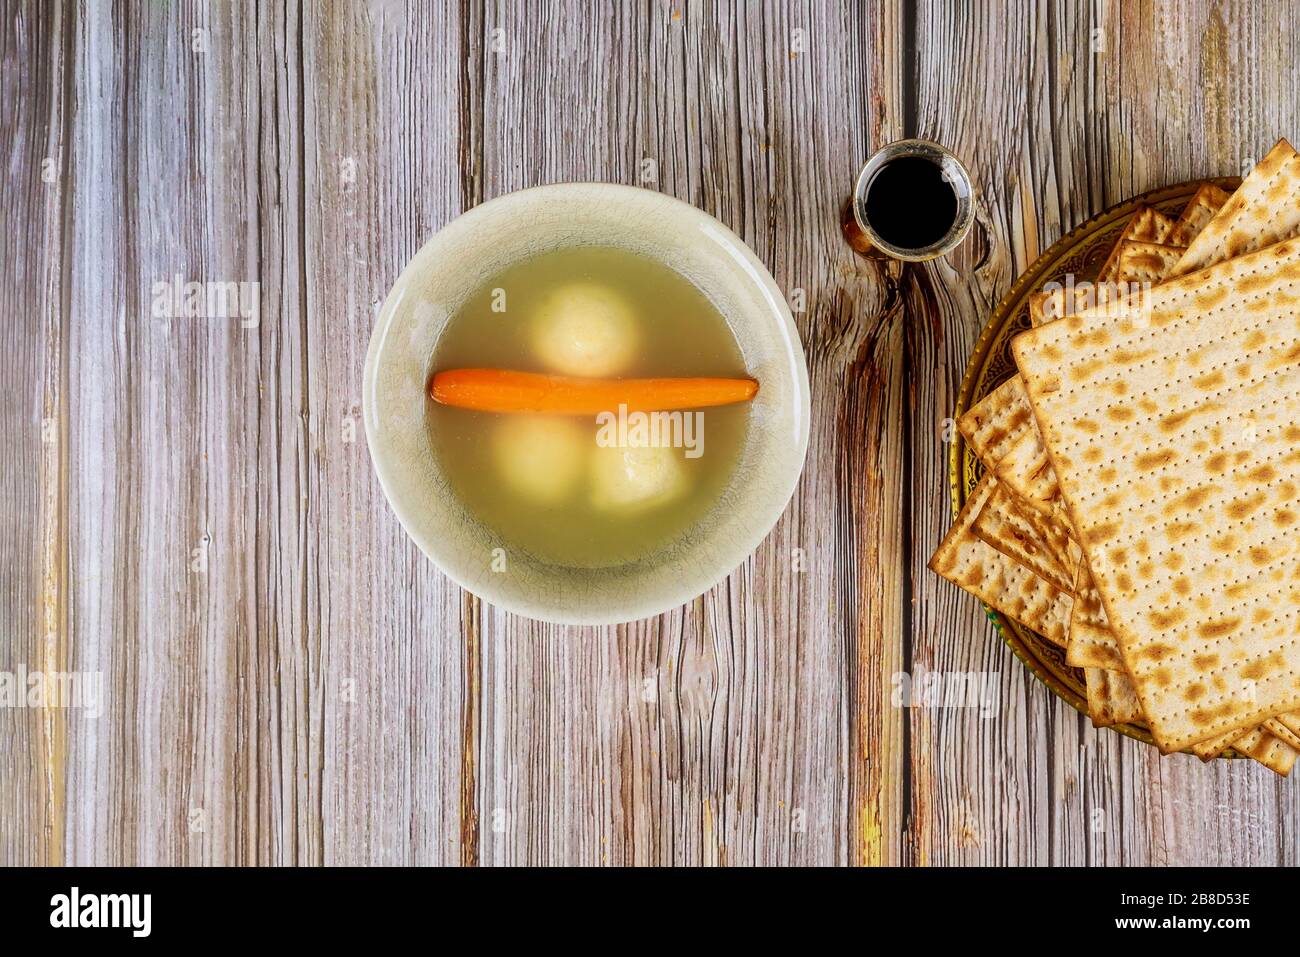 La Pâque juive matzo ball chaud maison dans un bol de soupe Banque D'Images